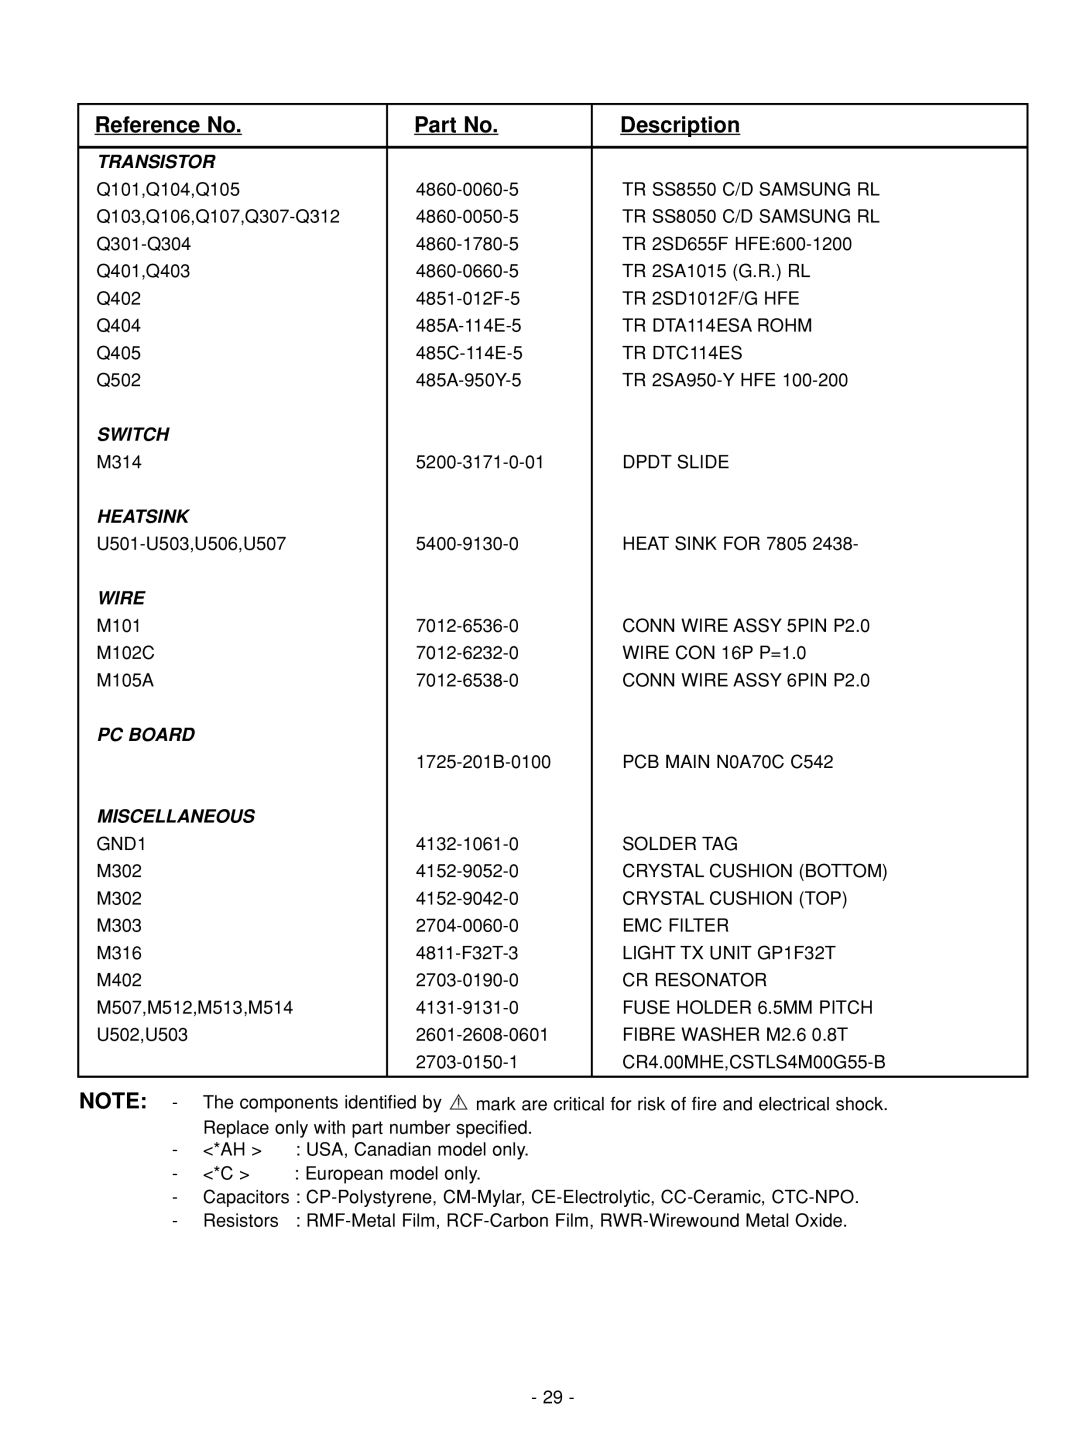 NAD C 542 service manual Reference No, Description, Transistor, Switch, Heatsink, Wire, Pc Board, Miscellaneous 